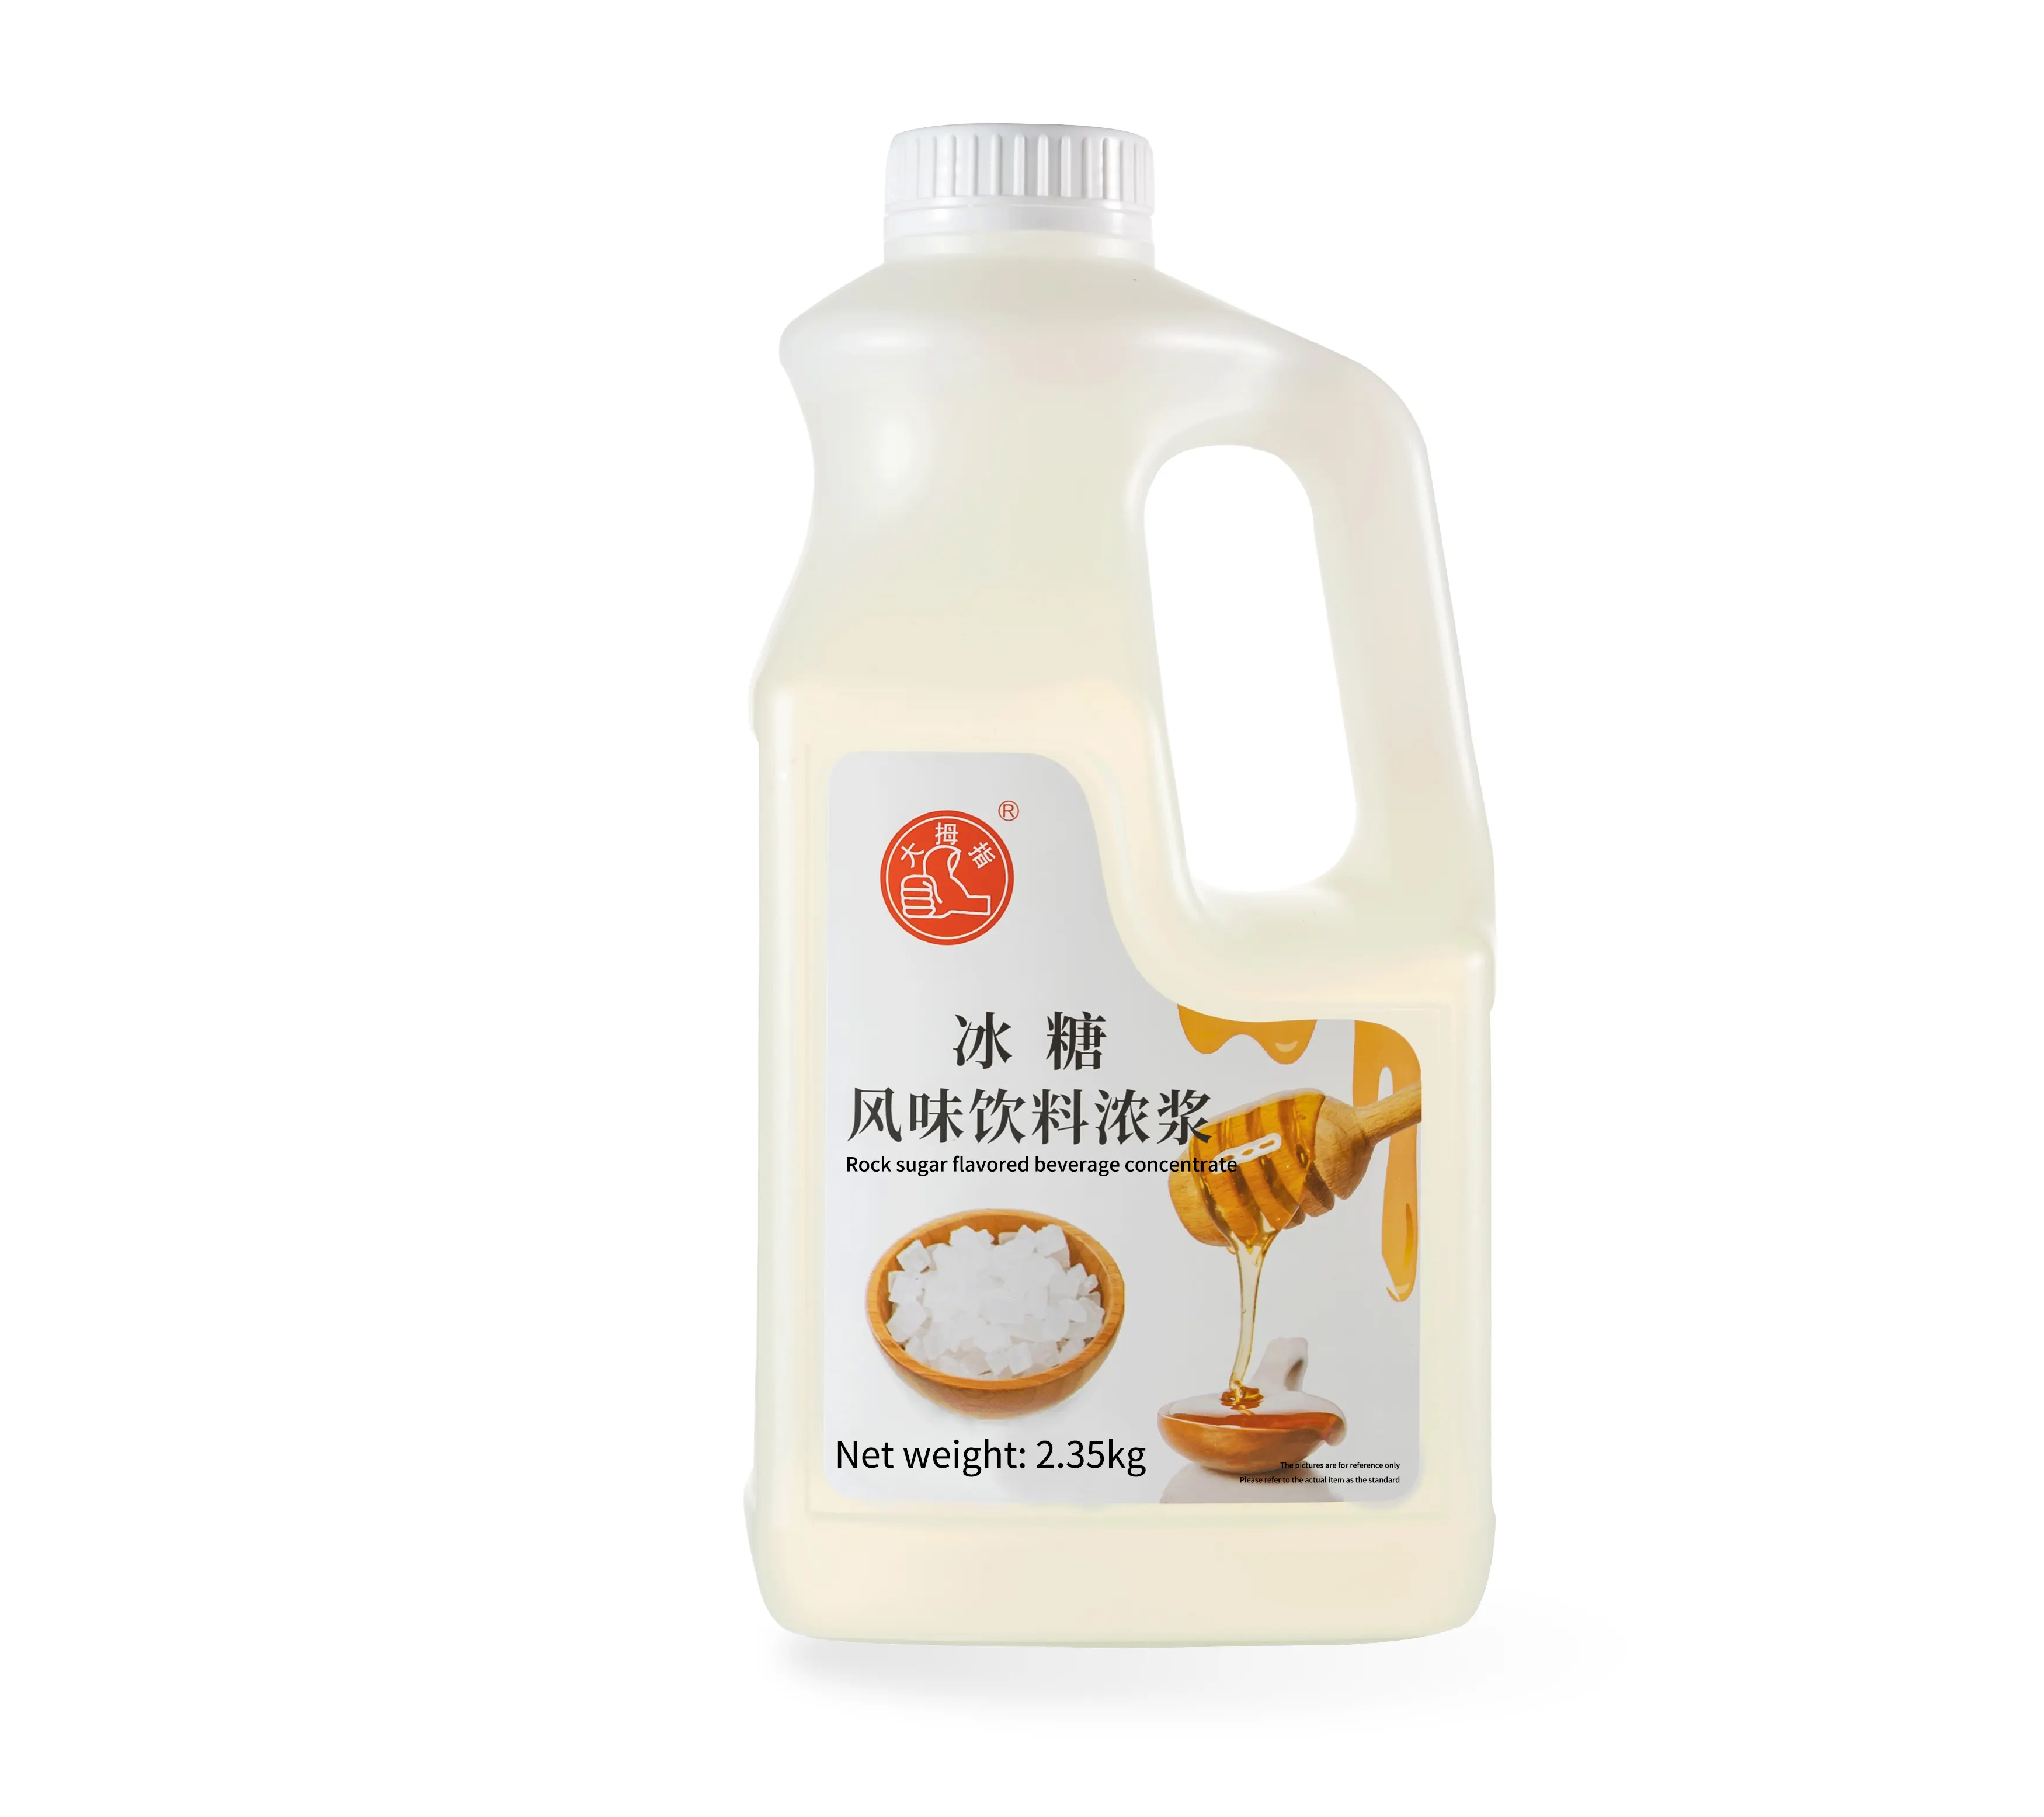 Hot bán đá đường xi-rô sữa bong bóng cửa hàng trà hỗn hợp nguyên liệu trái cây trà uống nước trái cây xi-rô đặc biệt